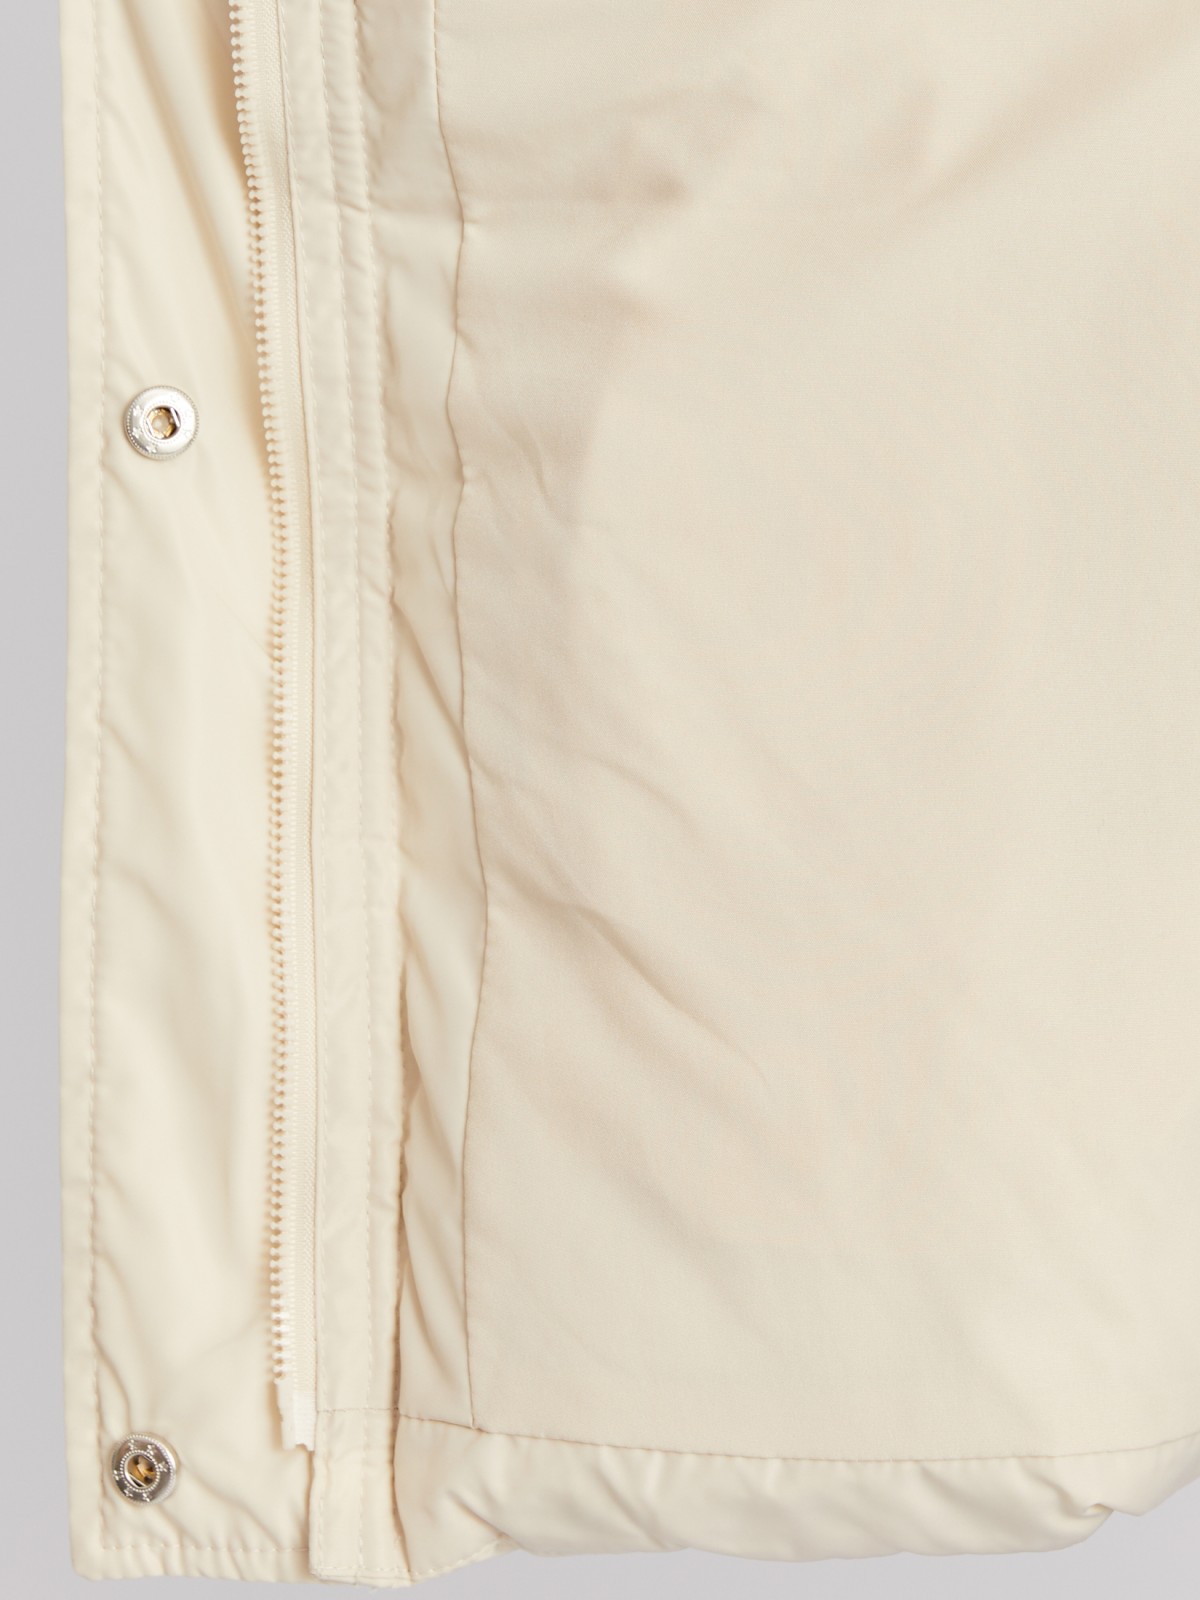 Тёплая стёганая куртка с капюшоном и внутренними манжетами-риб zolla 023345102064, цвет молоко, размер XS - фото 5